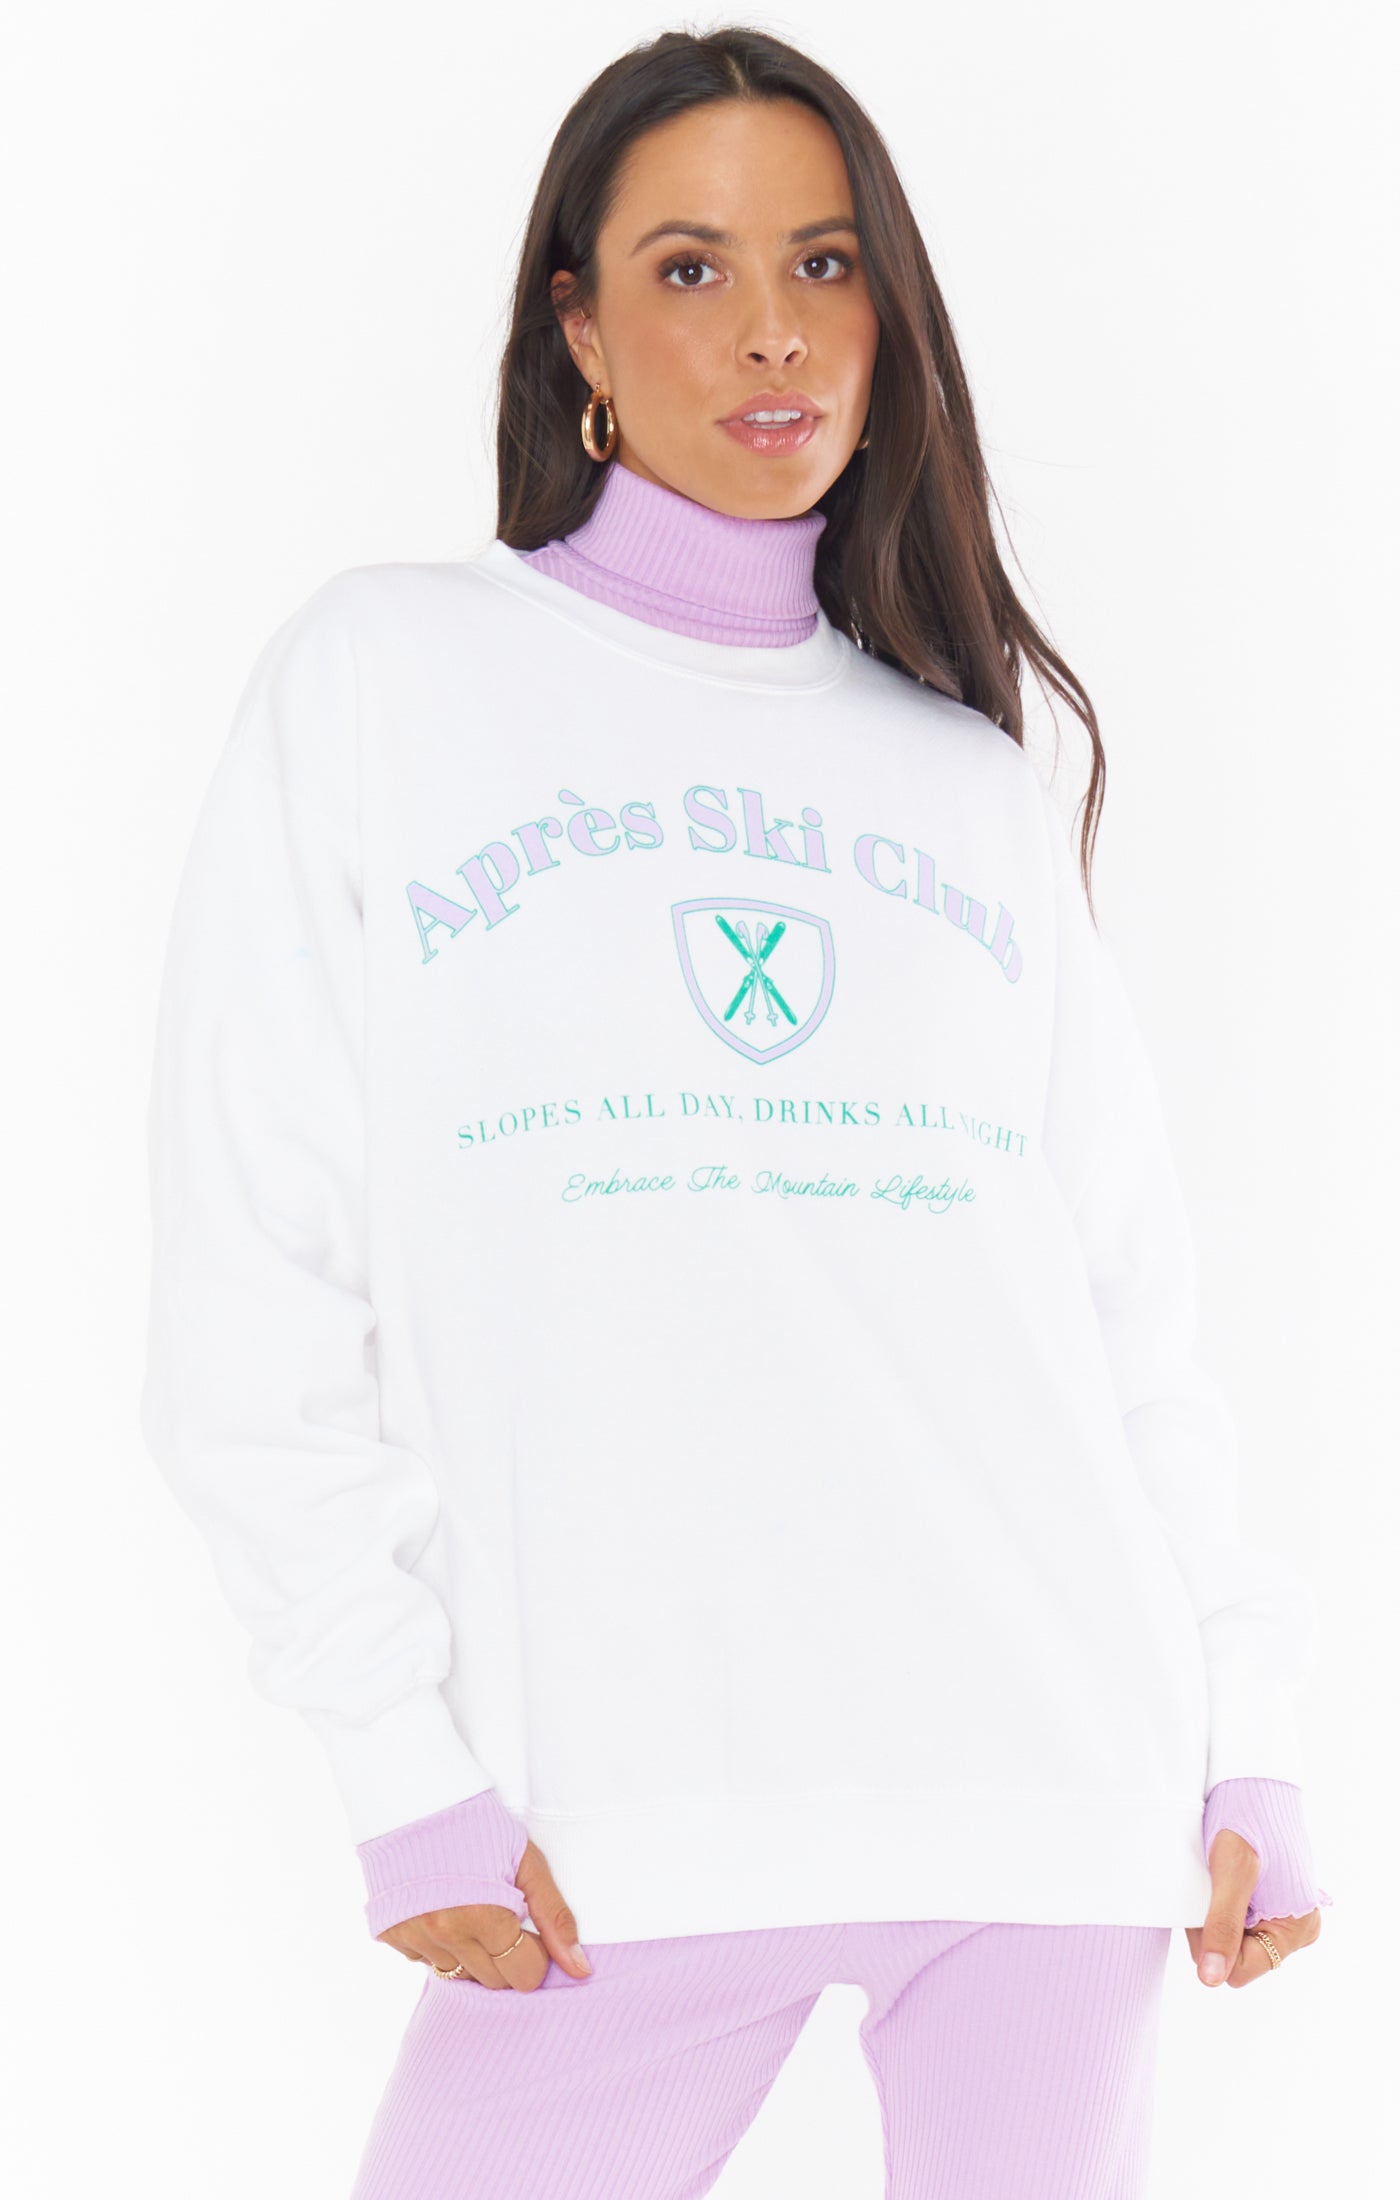 Apres ski club graphic sweatshirt